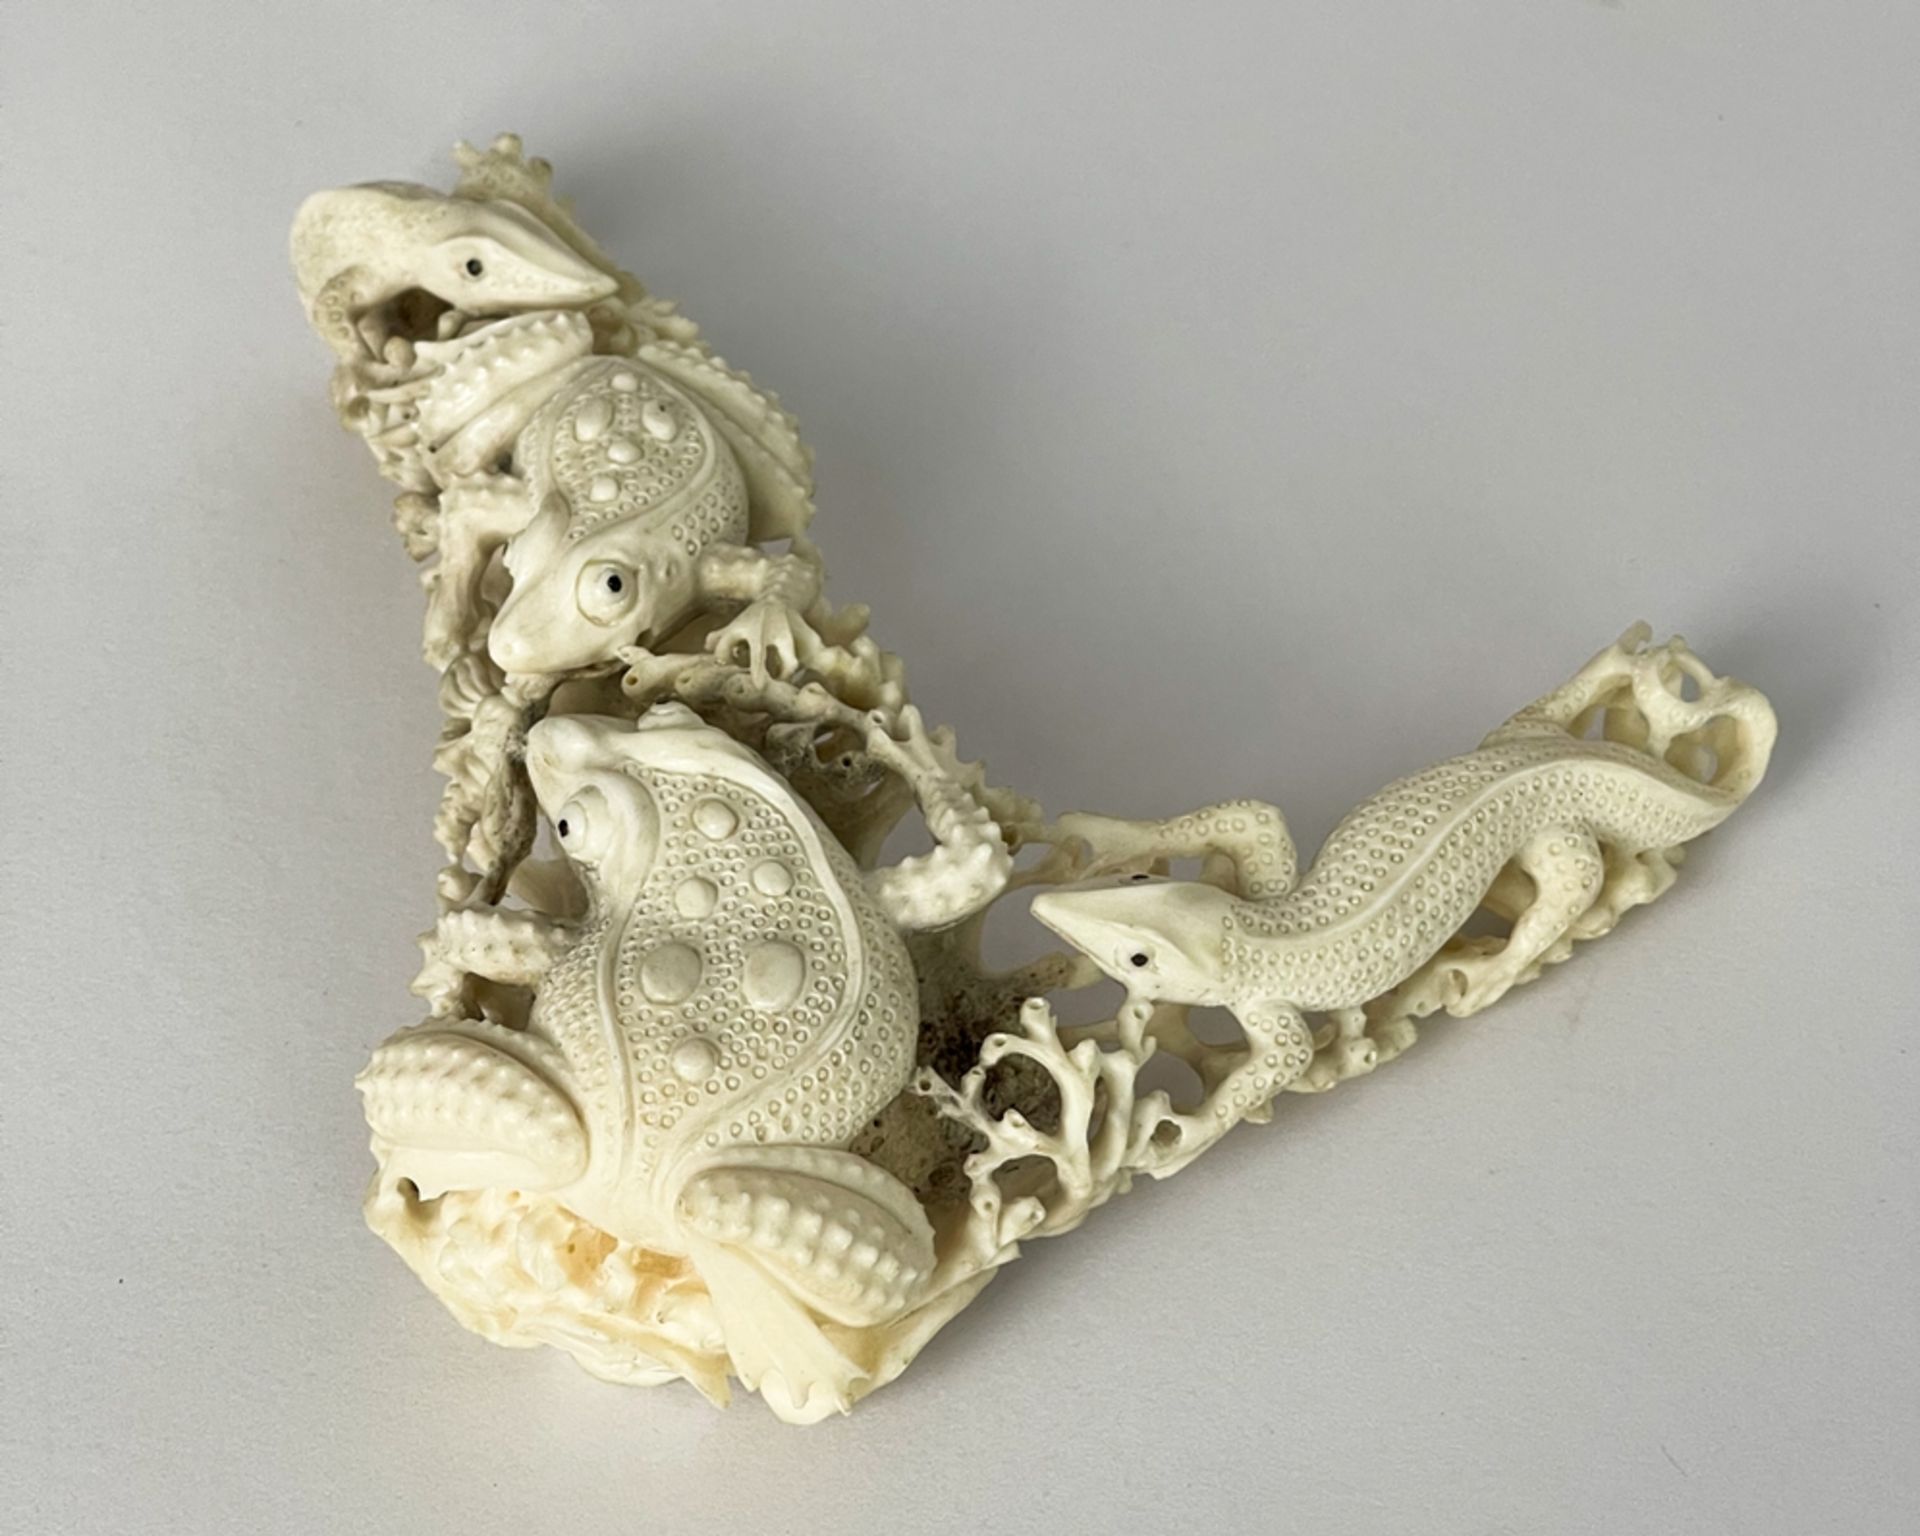 Geschnitzte Skulptur aus Bein mit Kröten / Frösche und Salamander - Image 2 of 8